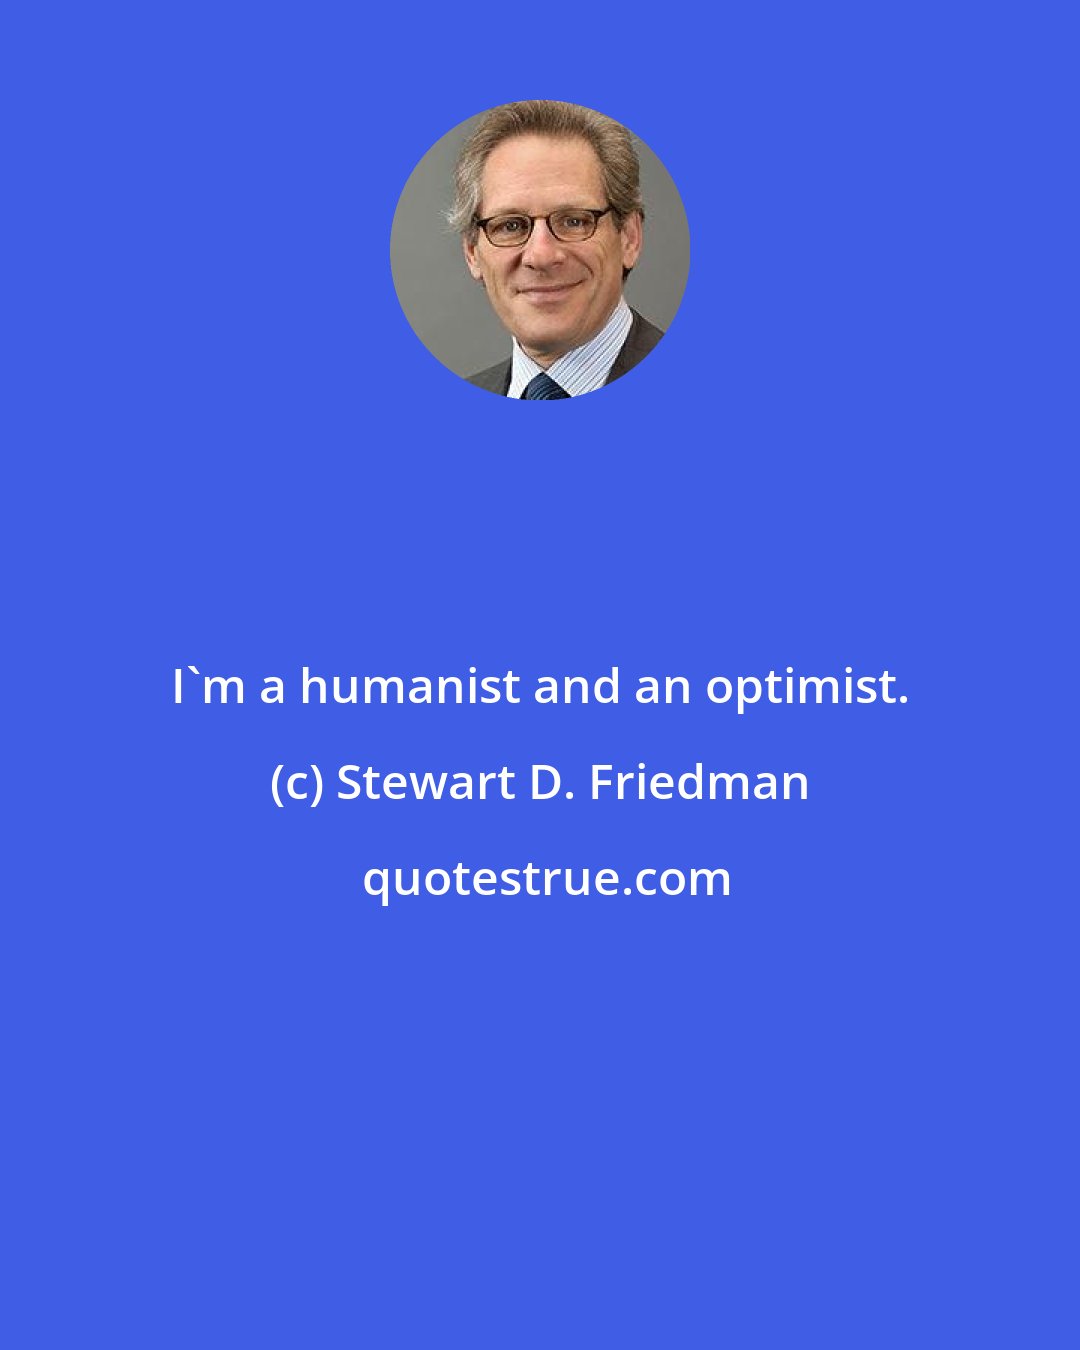 Stewart D. Friedman: I'm a humanist and an optimist.